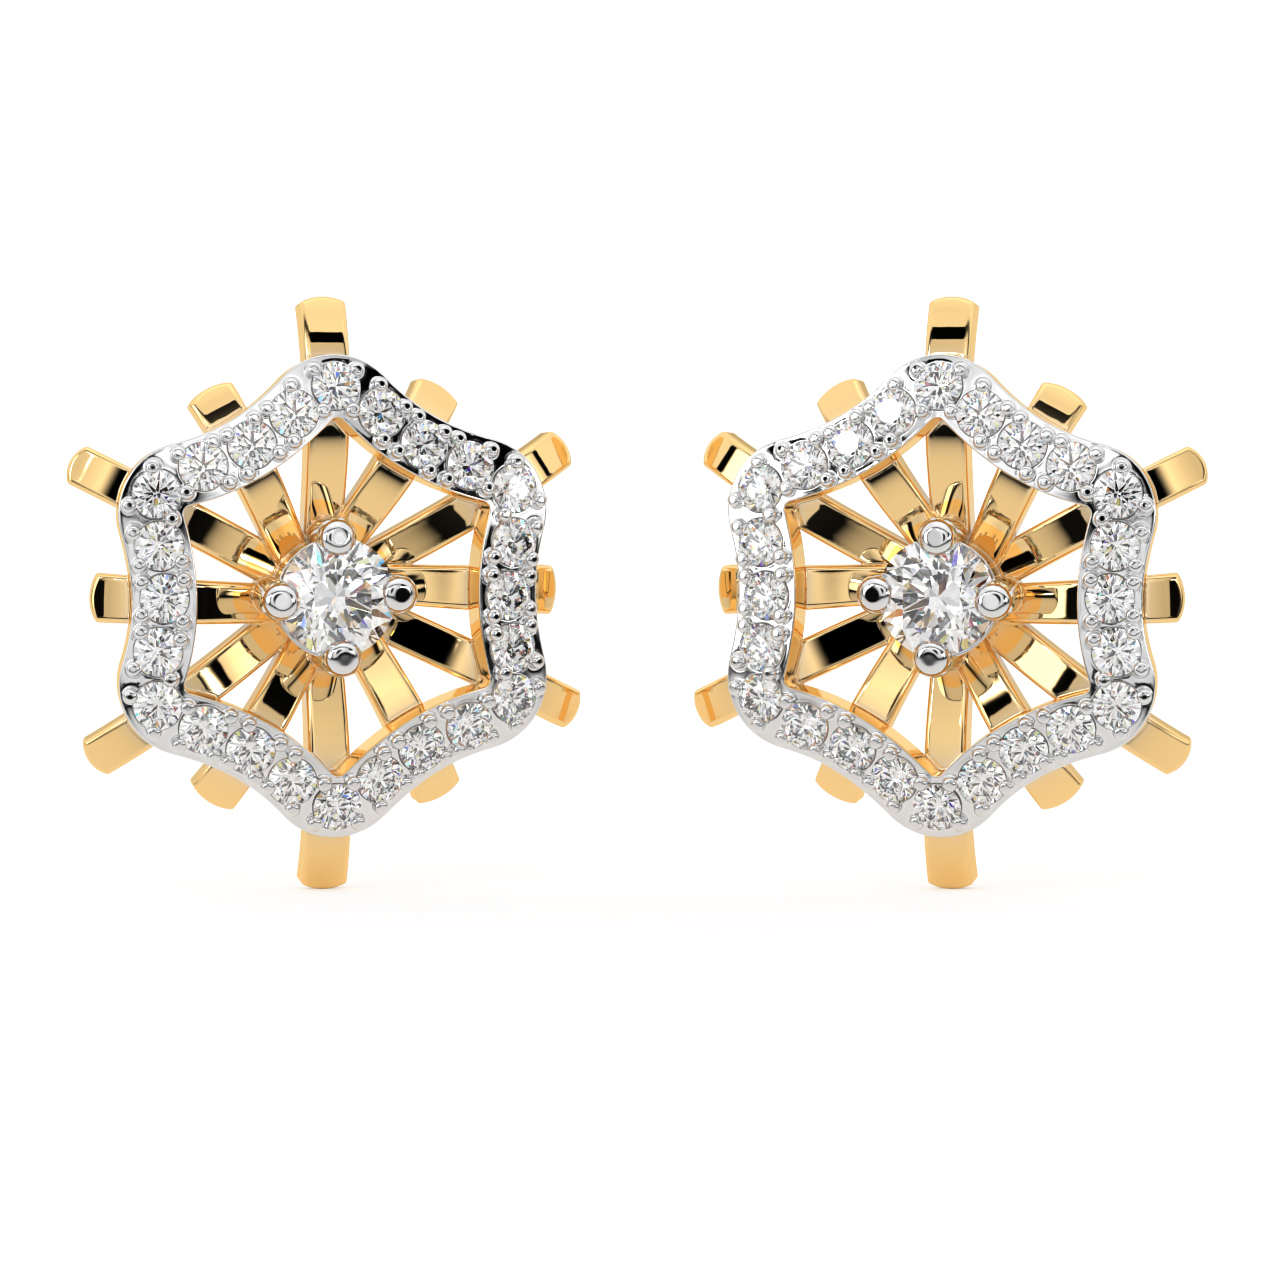 Sparkly Nuttallii Diamond Stud Earrings